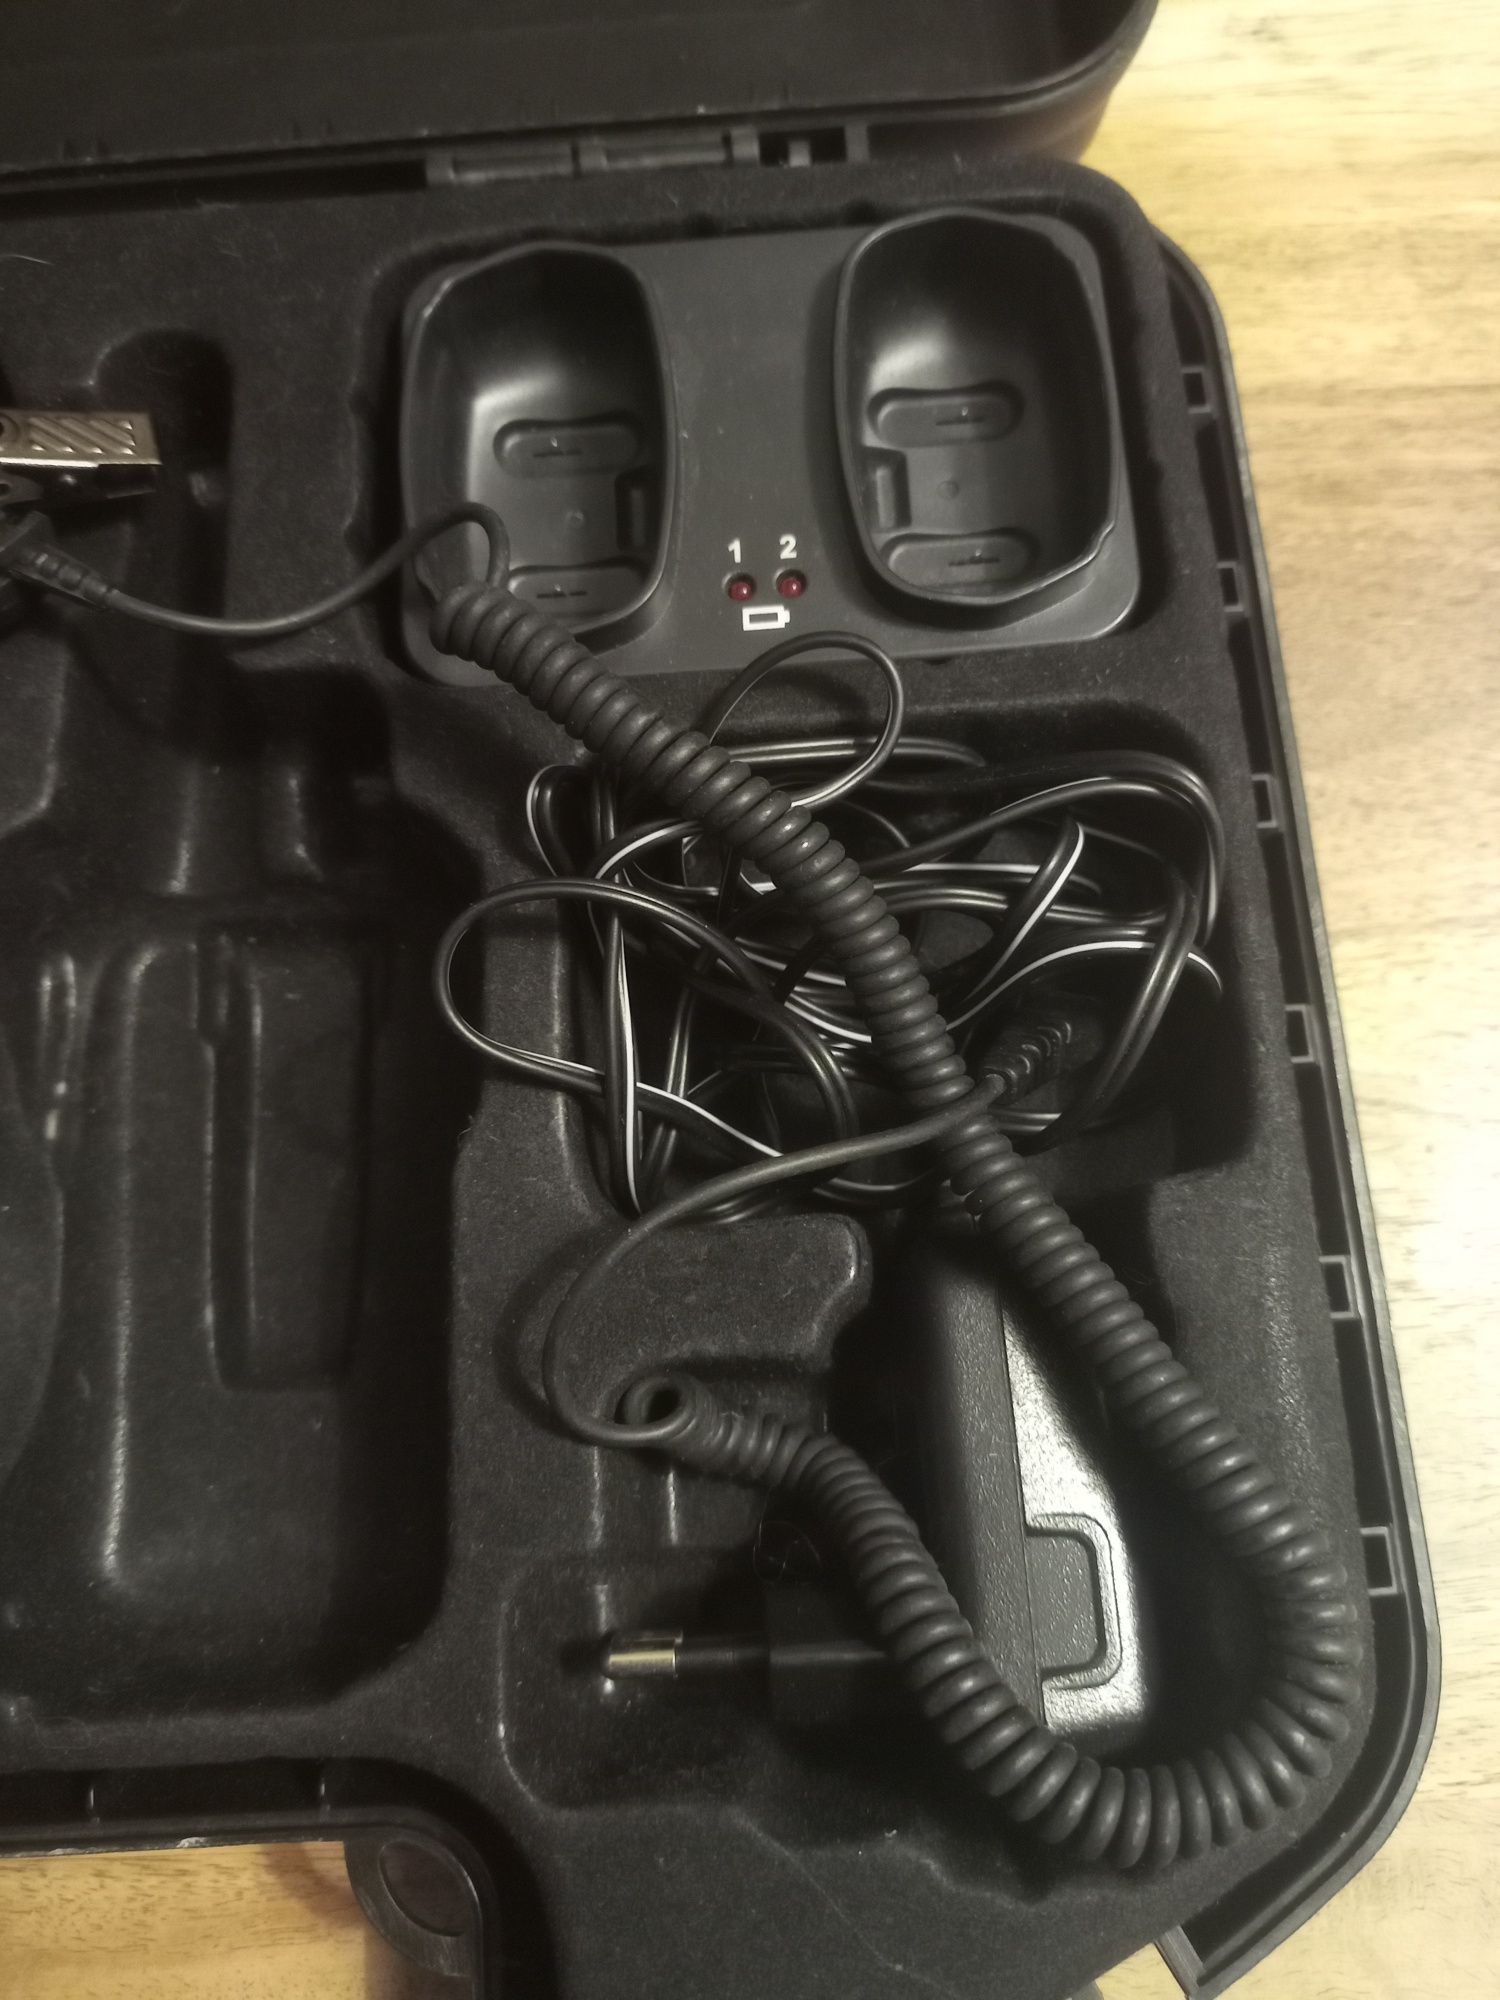 Statie emisie recepție walkie-talkie